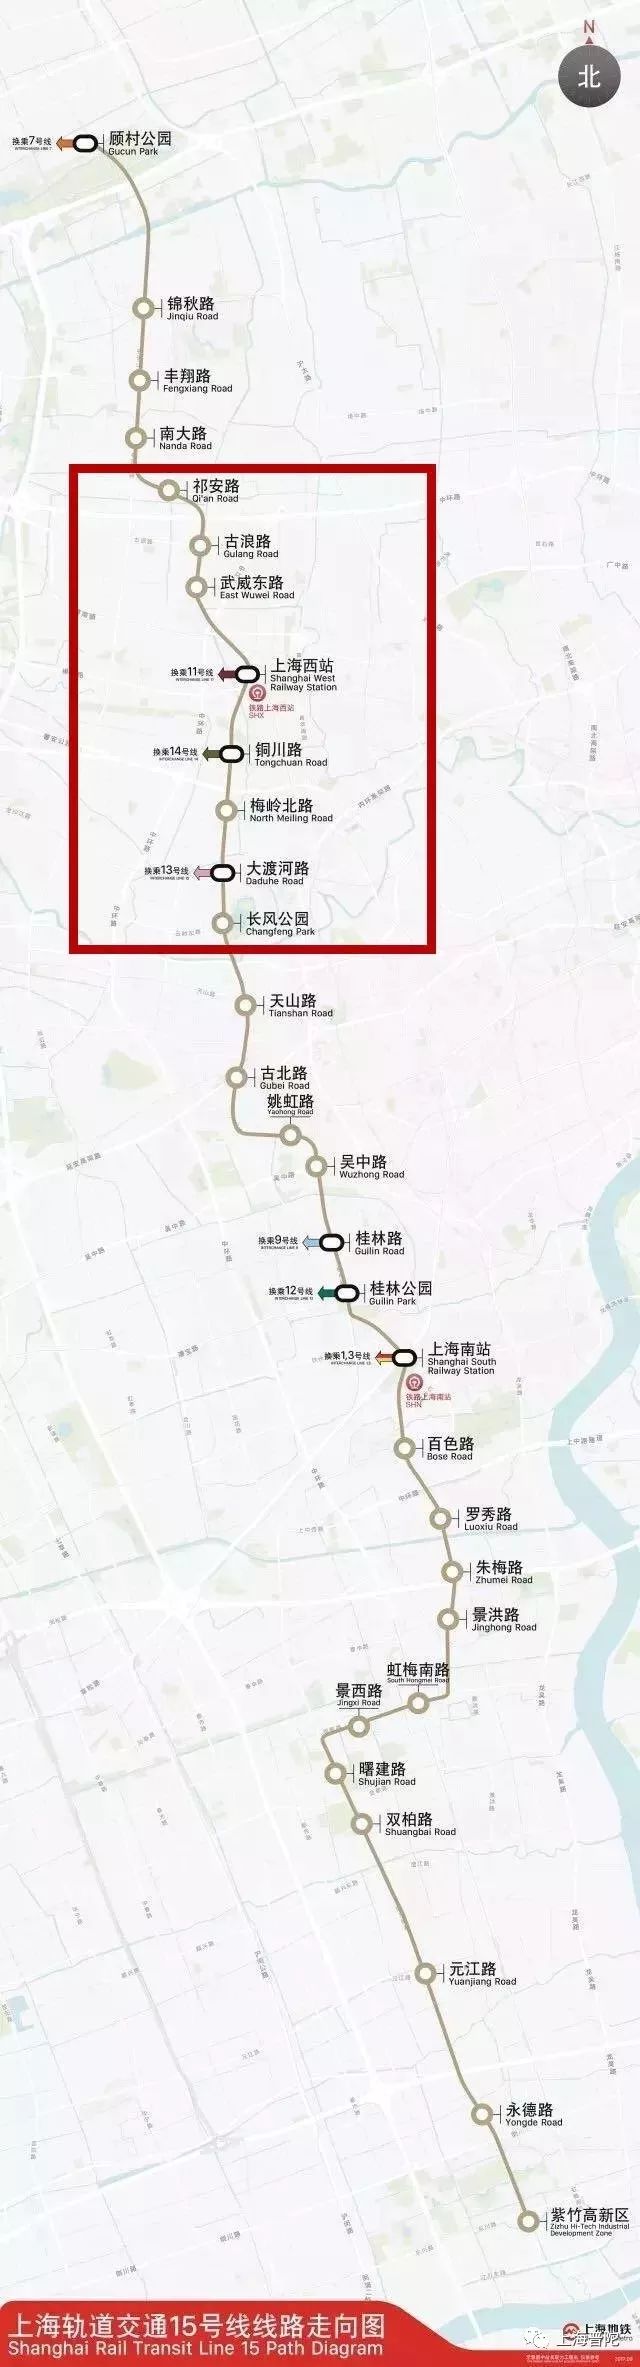 上海地铁15号线普陀区段调整最新公示信息一览